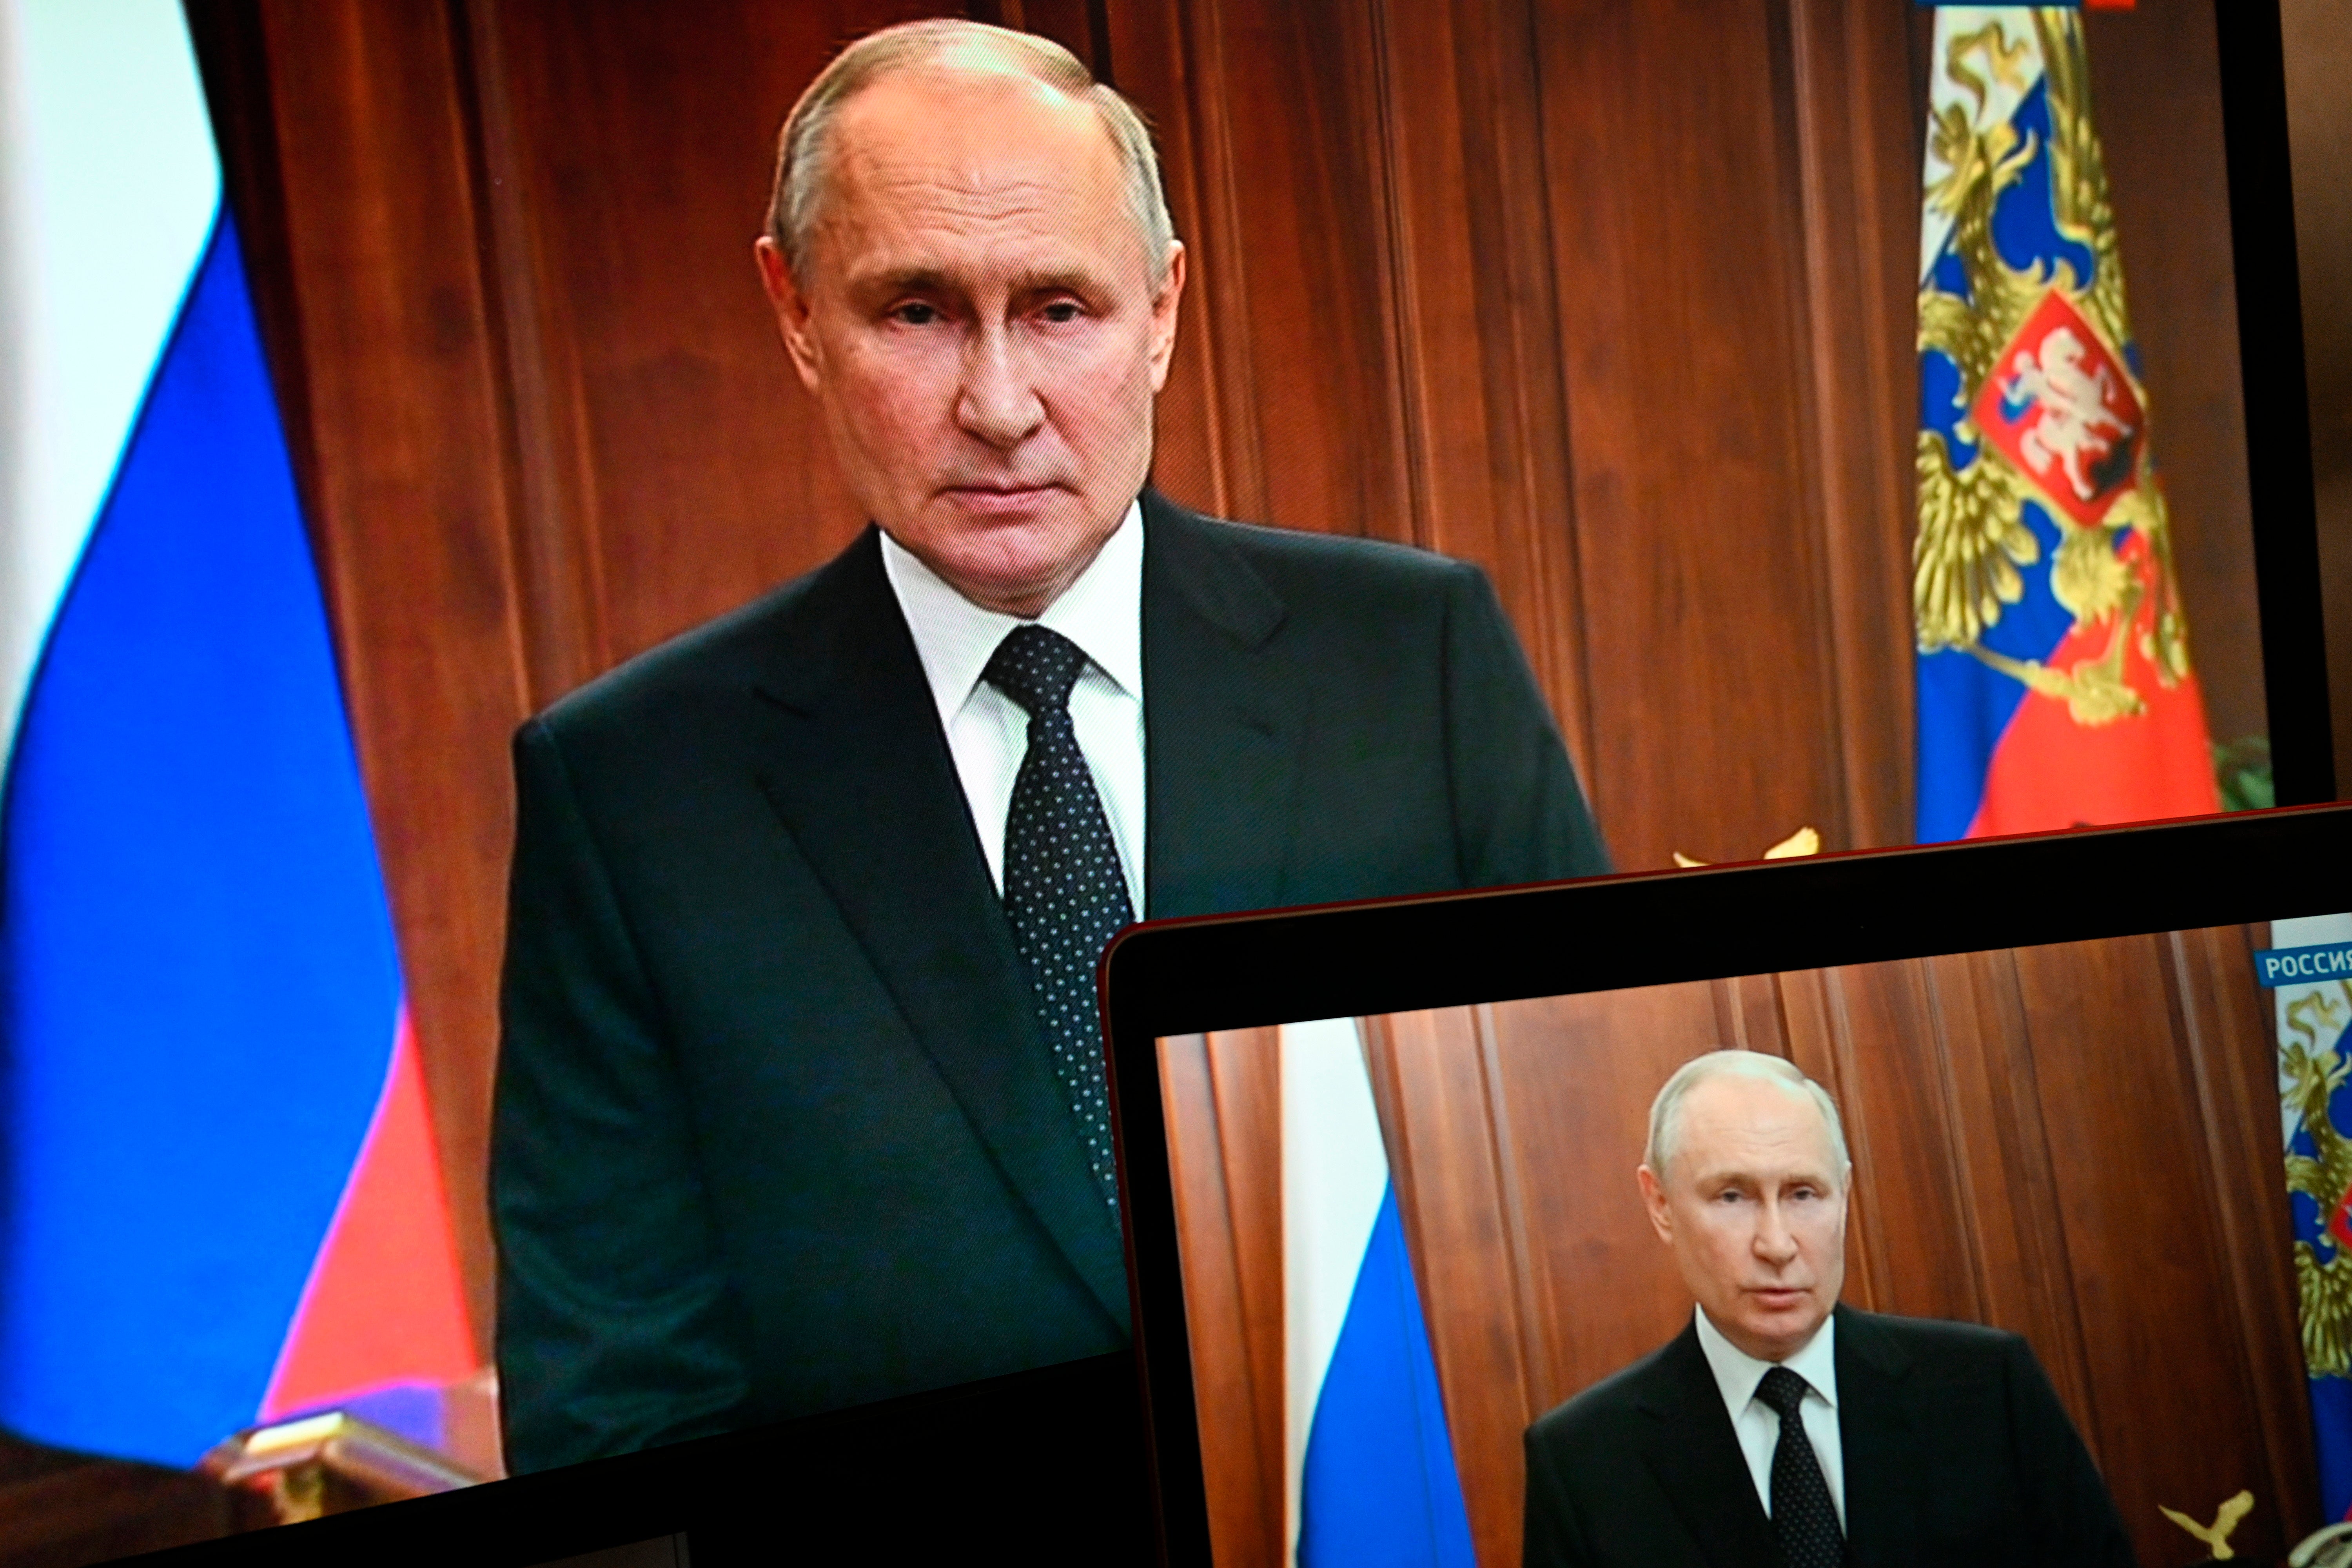 A post-Putin era suddenly seemed a lot closer